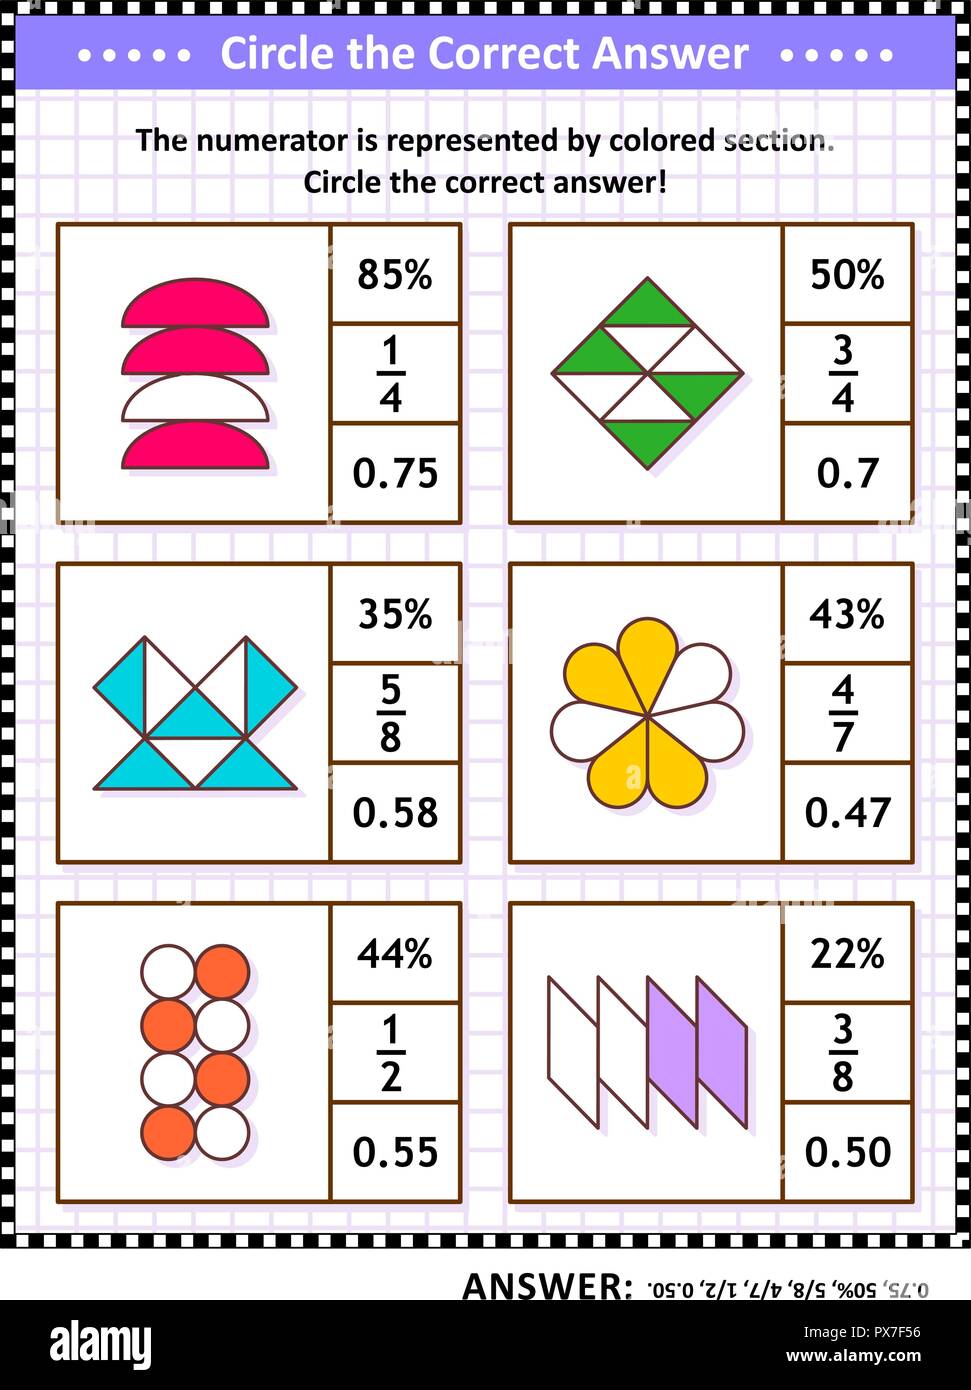 Le competenze matematiche formazione visual puzzle. Cerchiare la risposta corretta. Trovare il numero equivalente per ciascuna frazione pittorica di rappresentanza. Risposta inclusa. Illustrazione Vettoriale